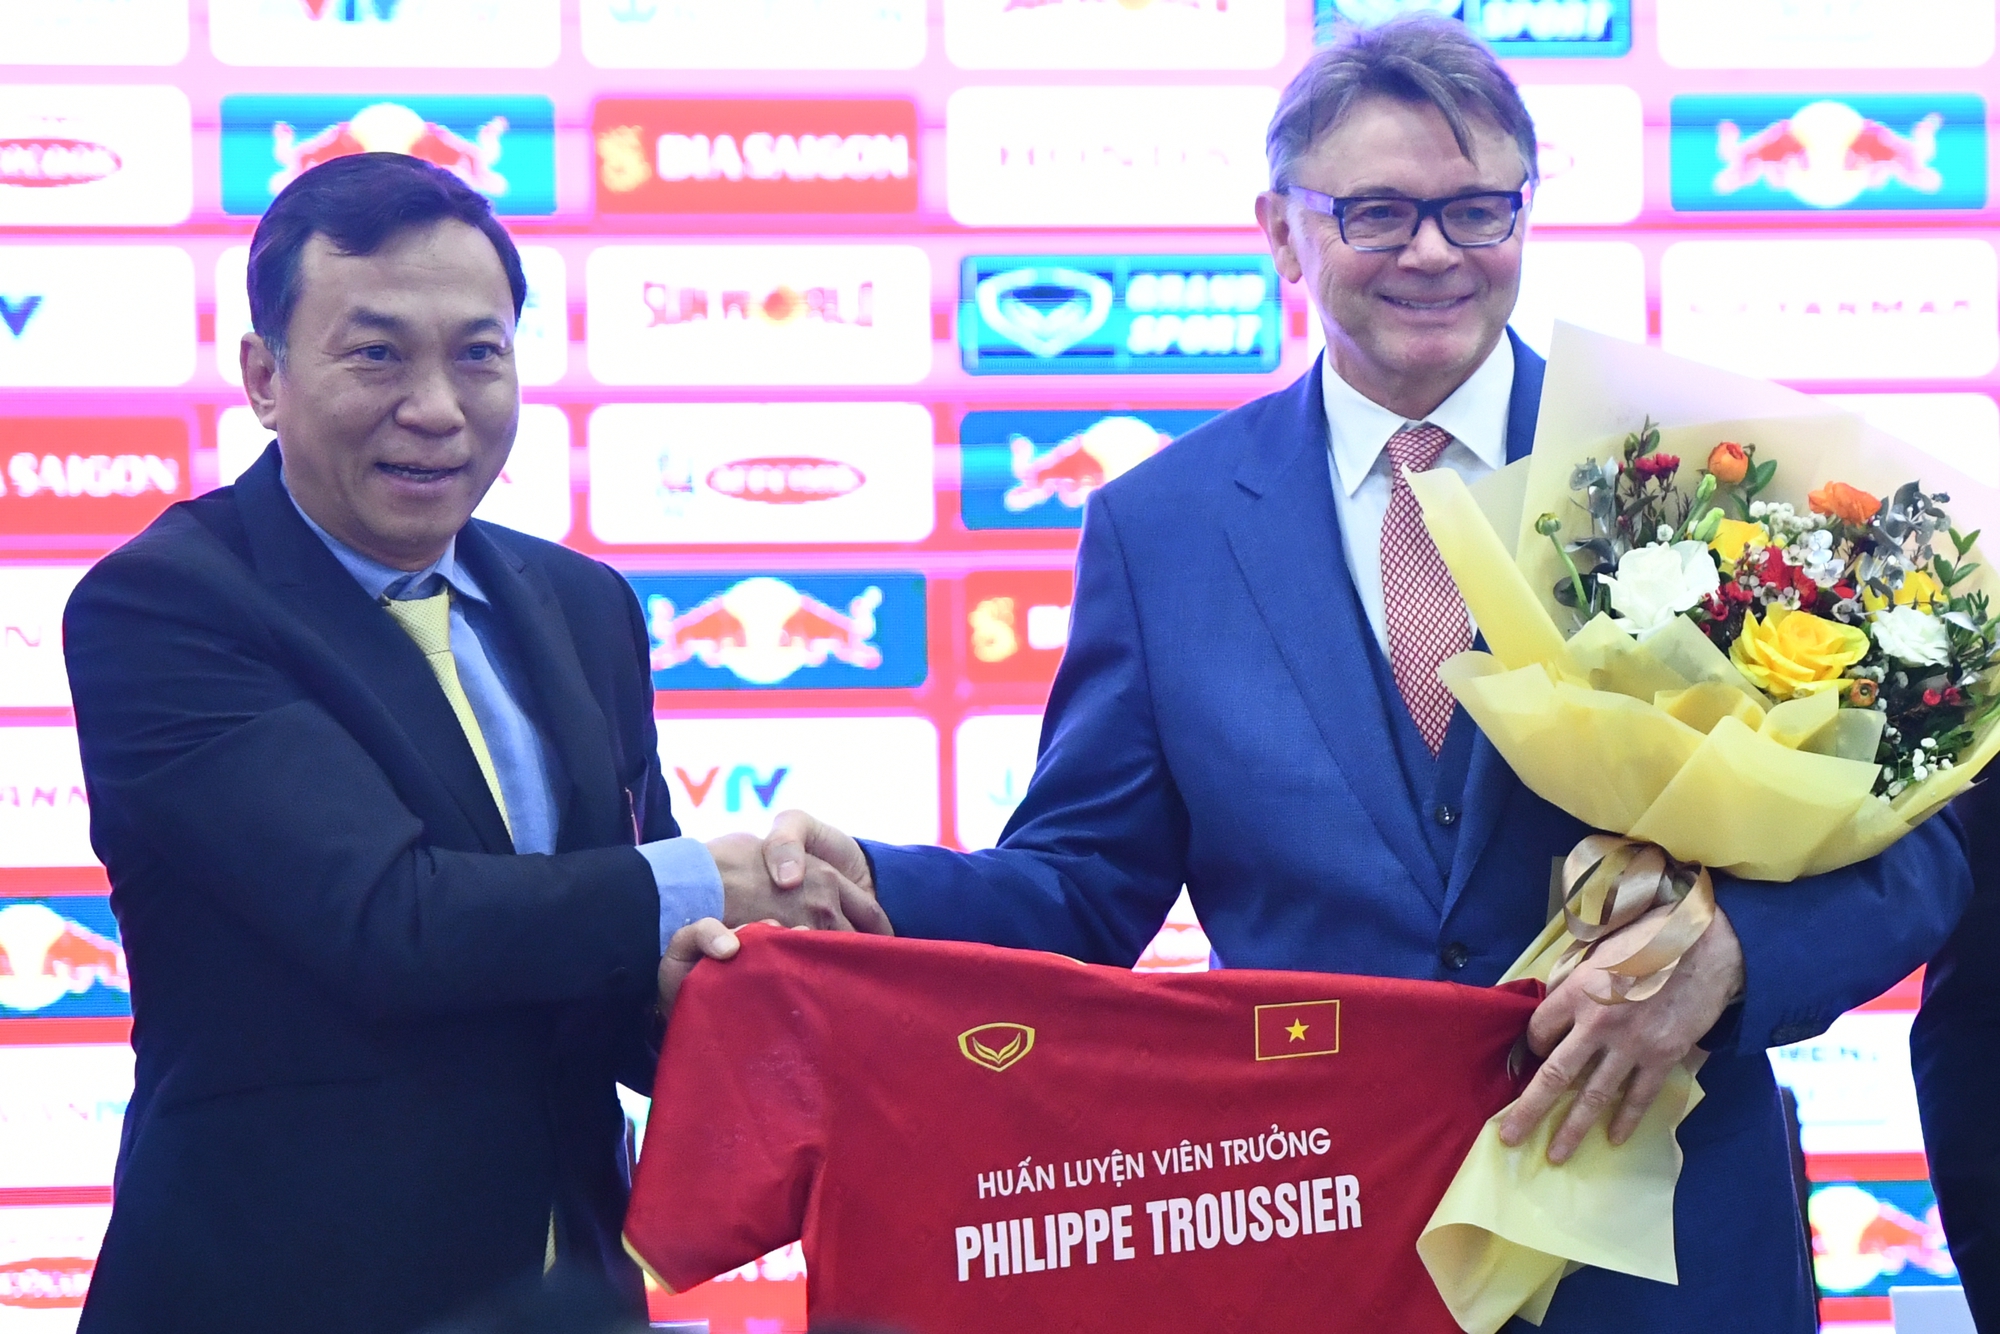 HLV Philippe Troussier diện trang phục trẻ trung, rạng ngời trong ngày nhậm chức HLV trưởng ĐT Việt Nam  - Ảnh 5.